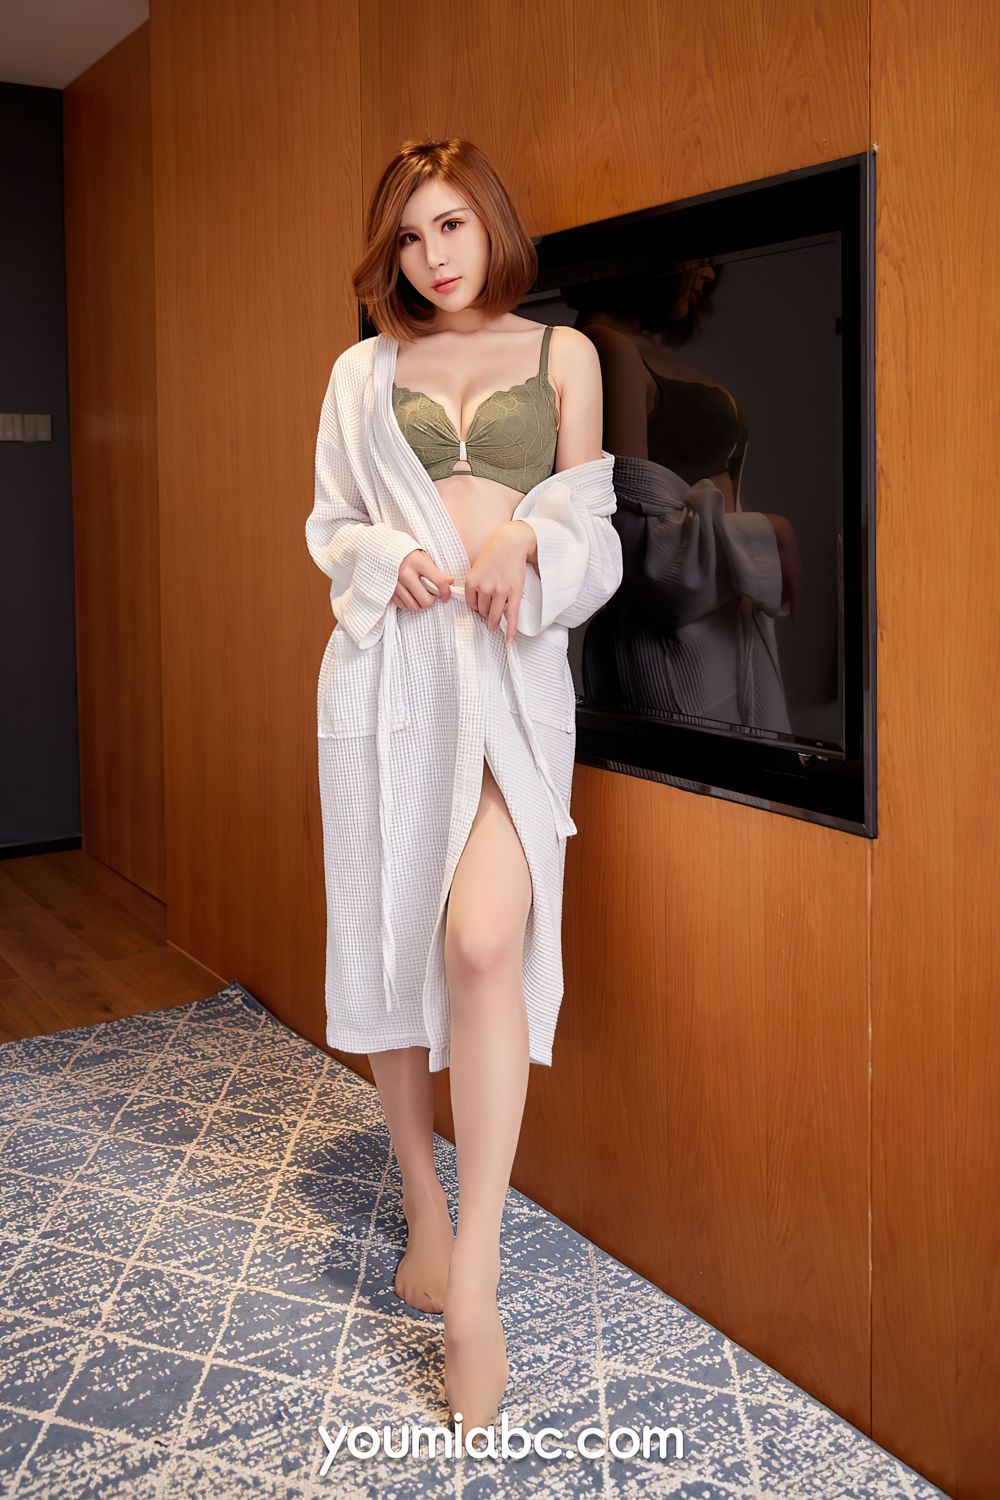 美女模特夏美子丝袜美腿墨色琥珀内衣主题性感写真